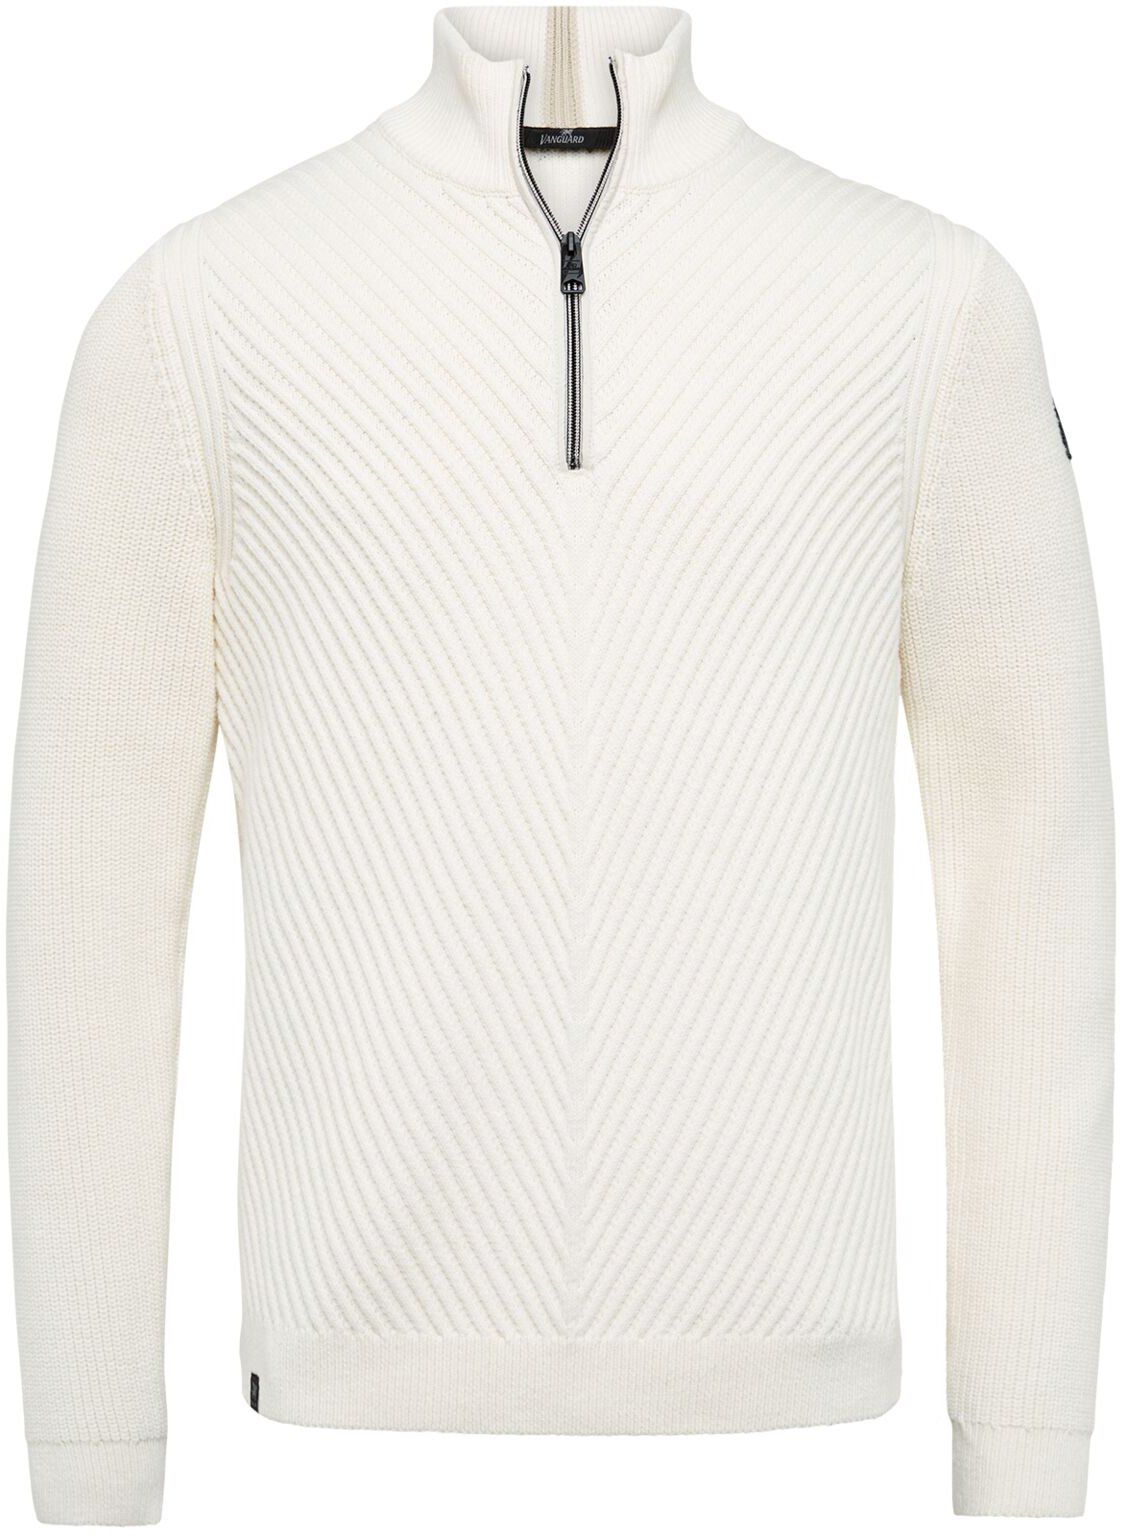 Vanguard Pullover Half Zip Off-White White size 3XL